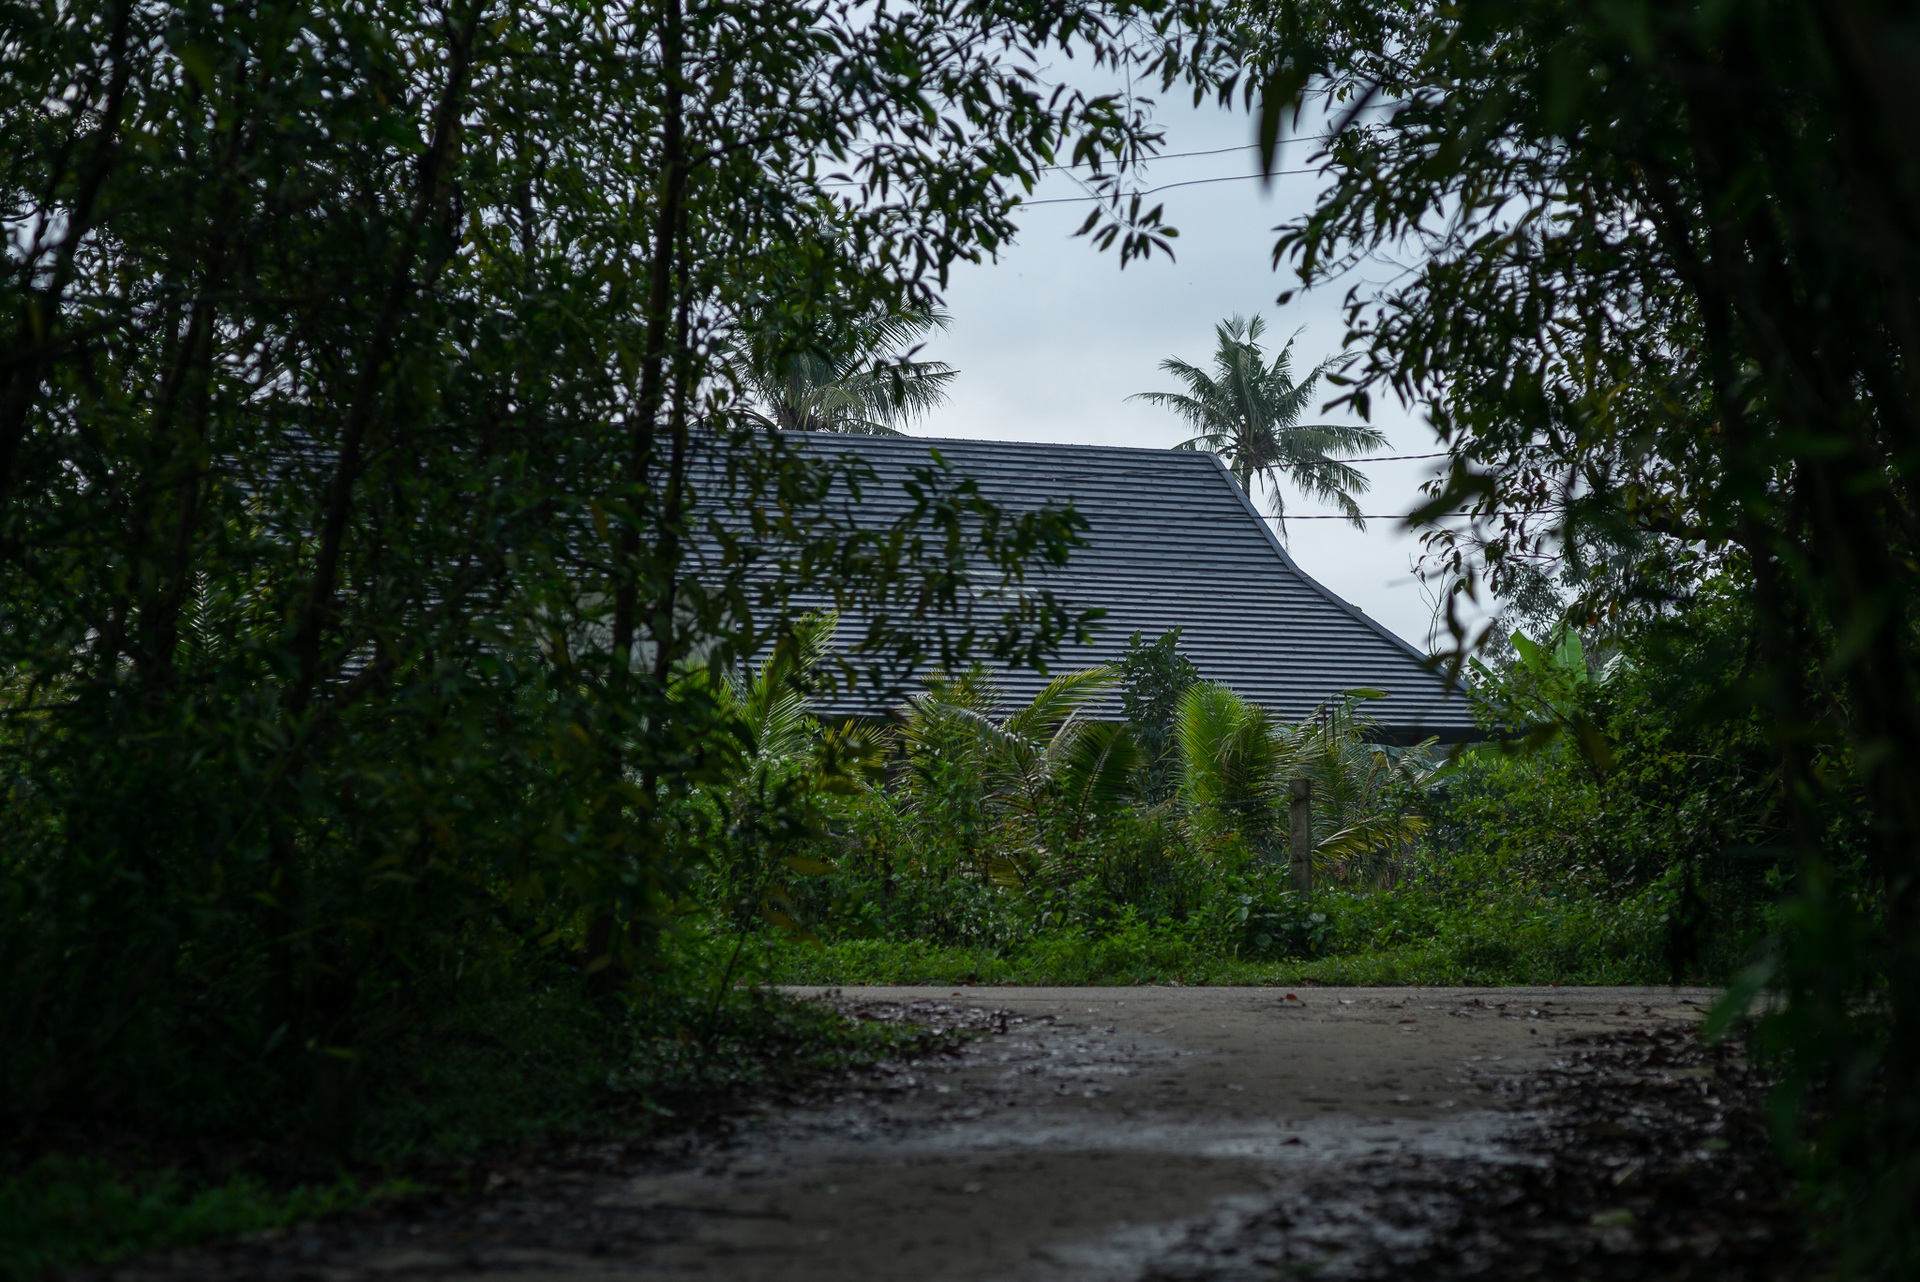 Căn biệt thự nhà vườn tiện nghi nằm giữa rừng keo xanh mướt tại Quảng Nam